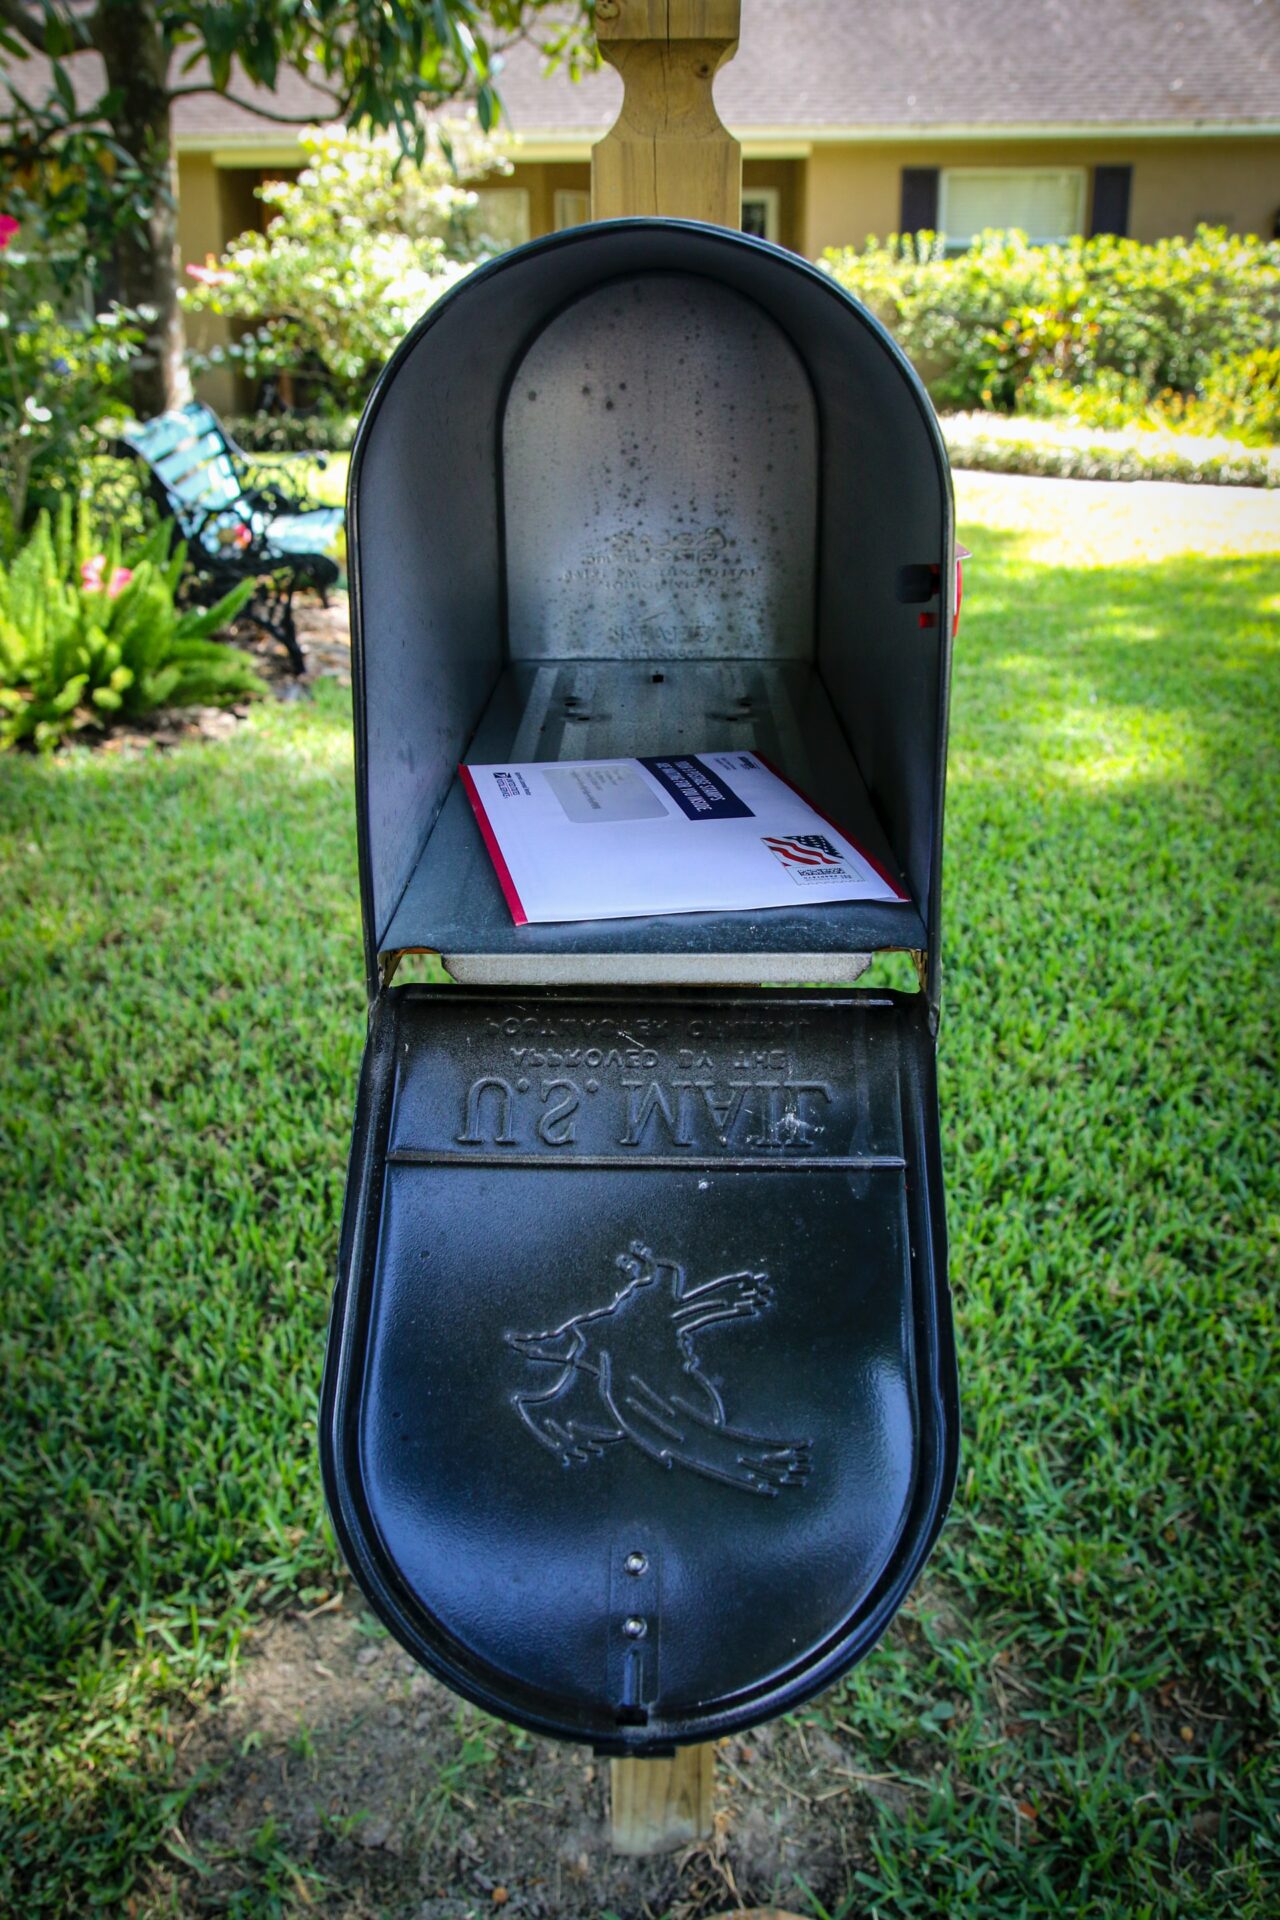 A open mailbox